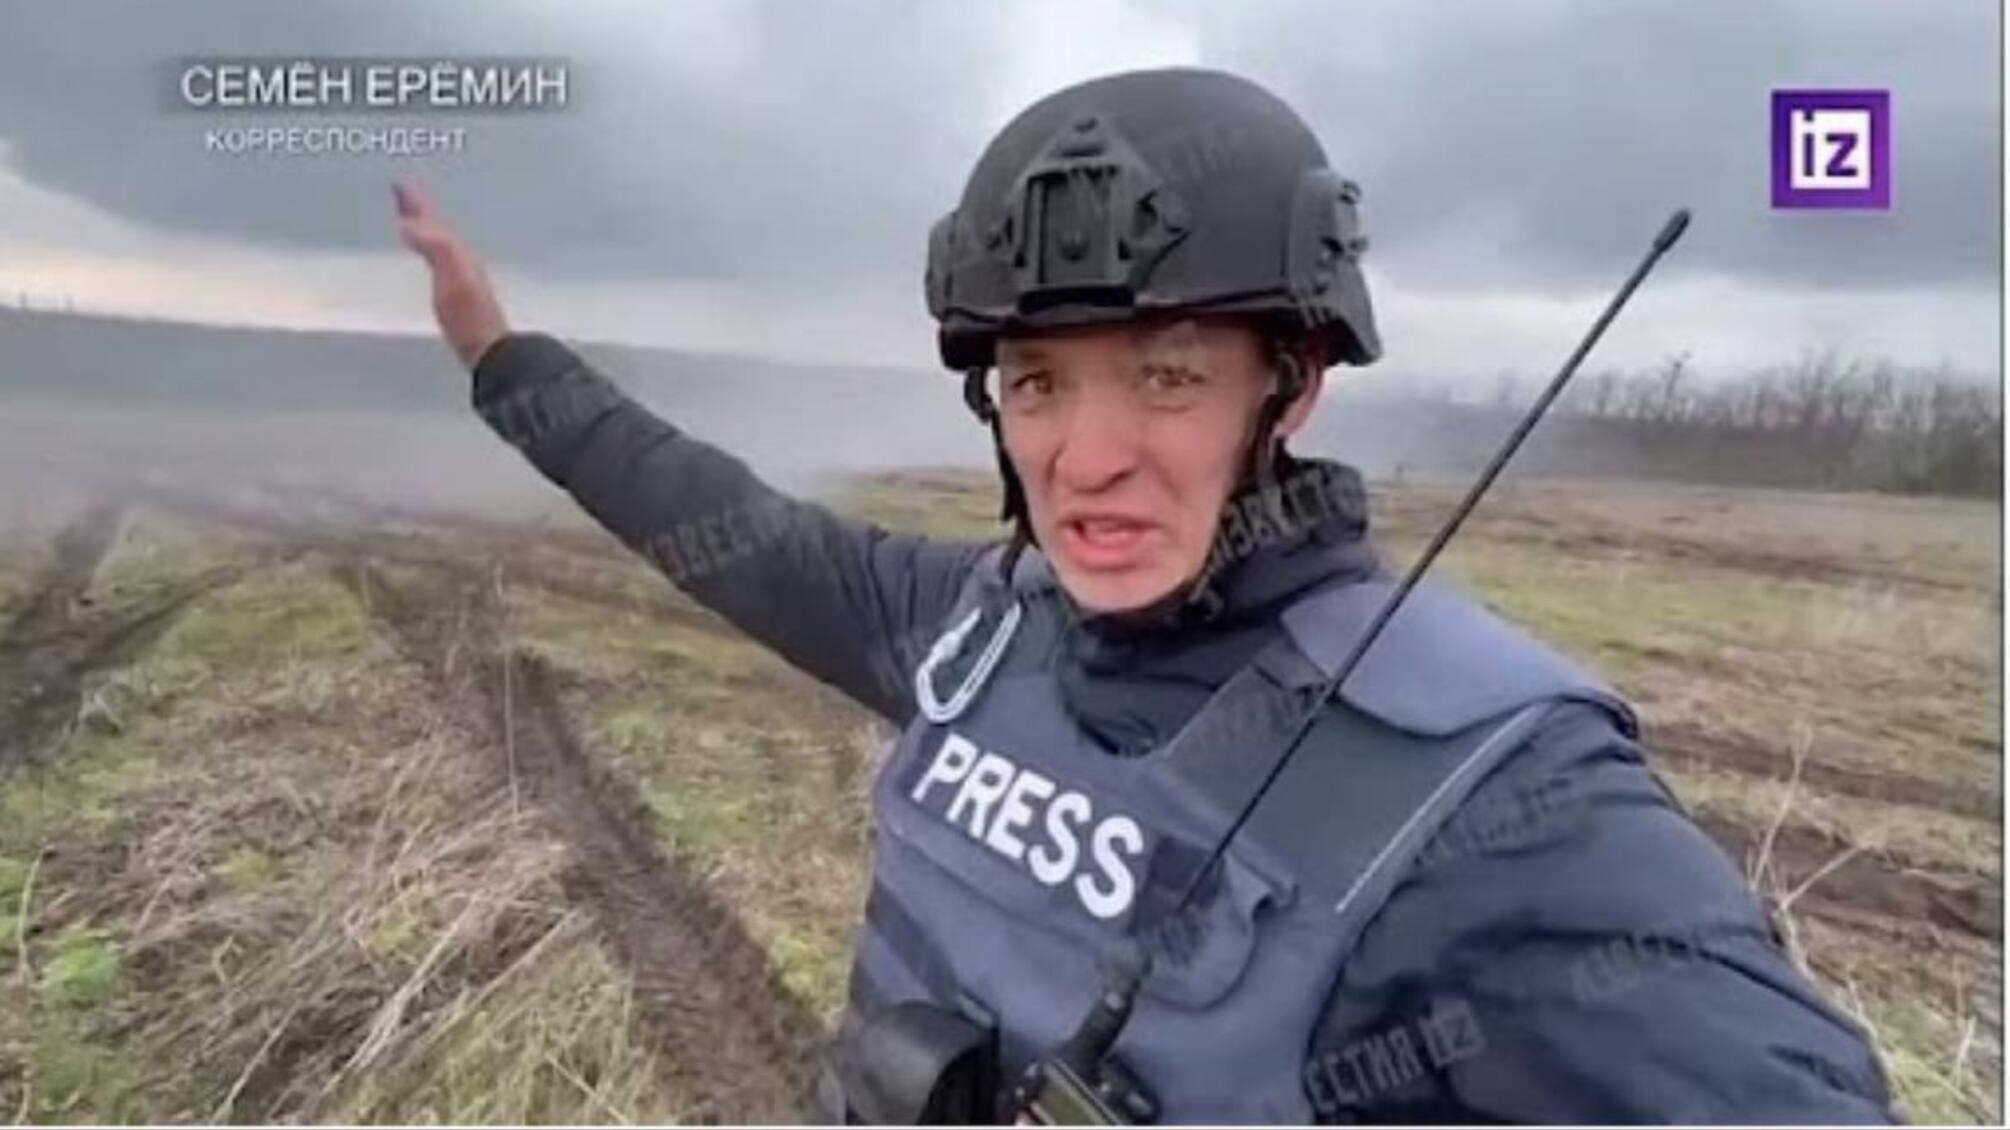 Украинские силы обороны ликвидировали российского пропагандиста-военкора на войне